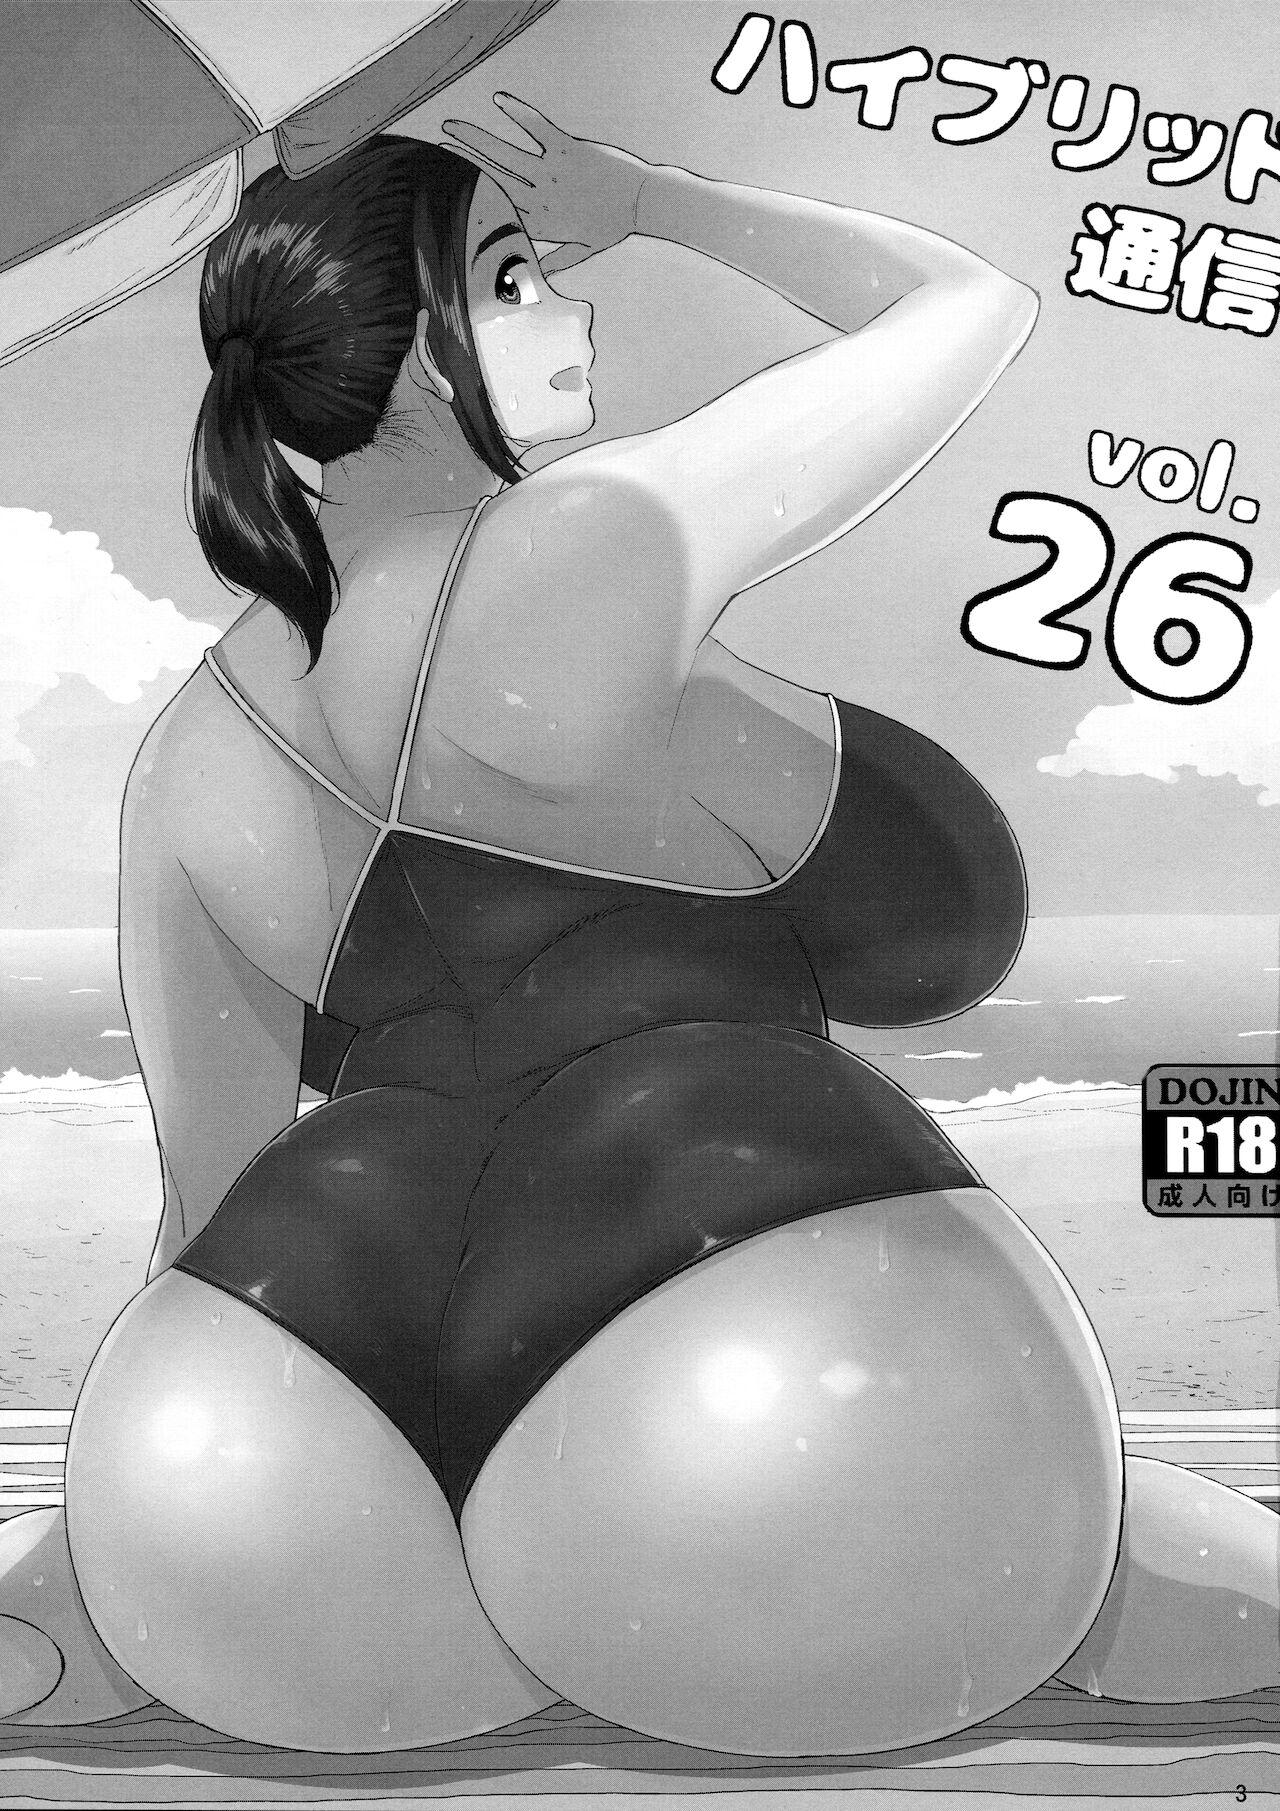 Nudist Hybrid Tsuushin Vol. 26 - Neko no otera no chion san Boys - Page 2